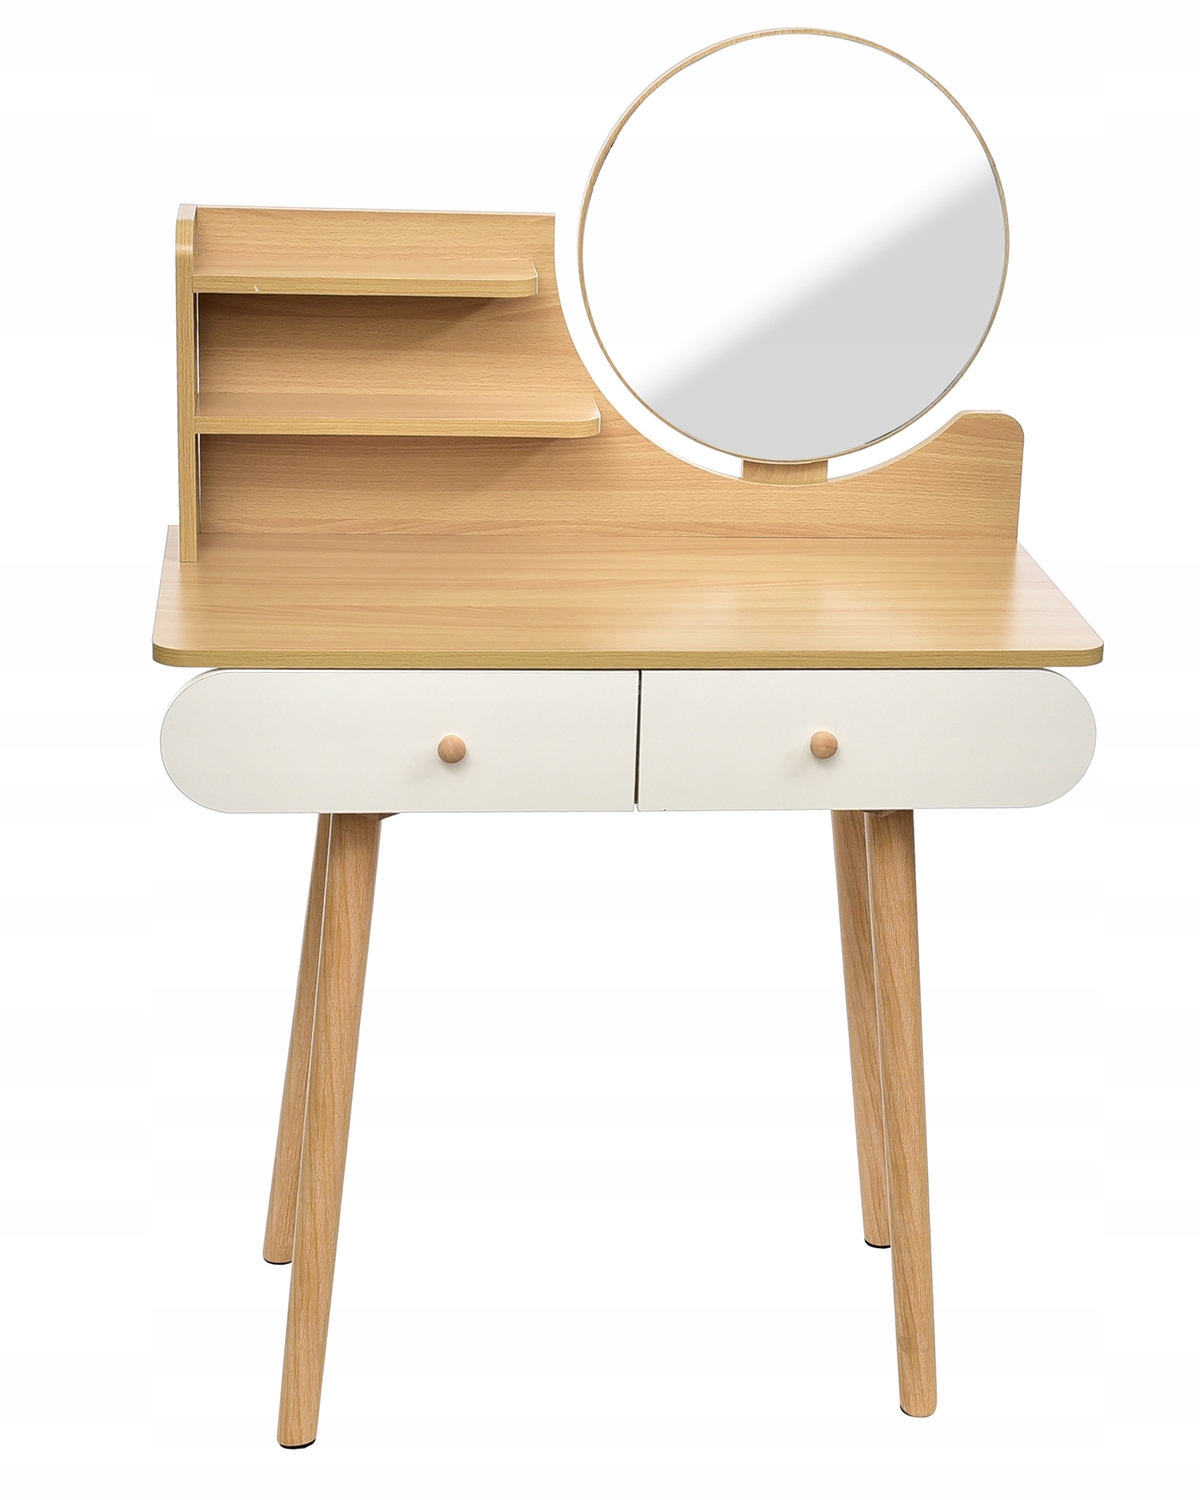 Скандинавский косметический туалетный столик с зеркалом SCANDI Мебель ширина 80 см.